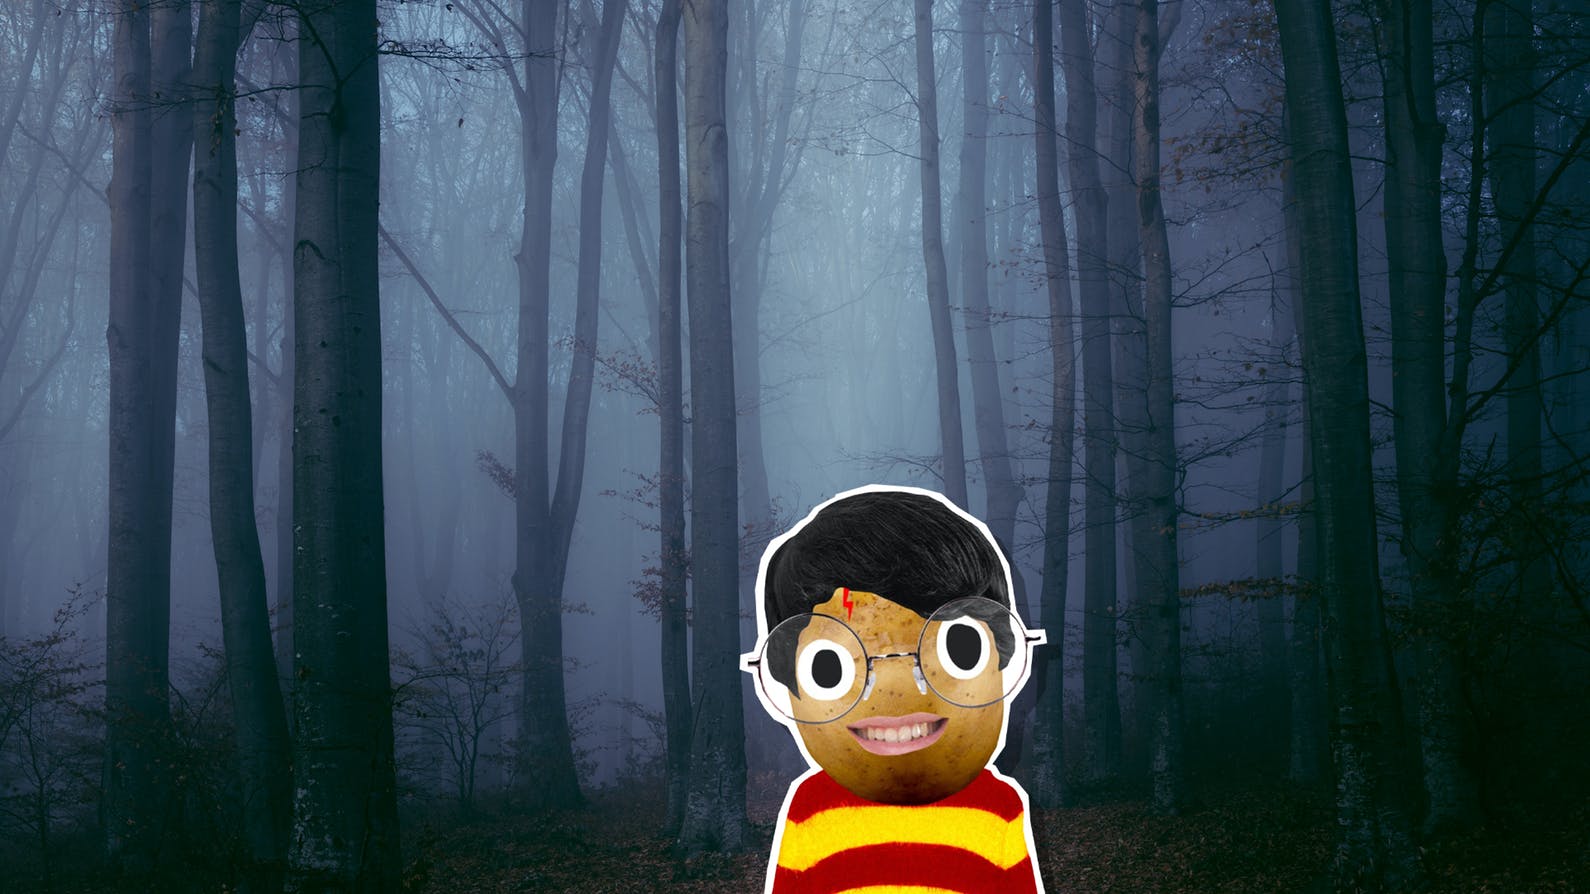 Harry in a spooky wood